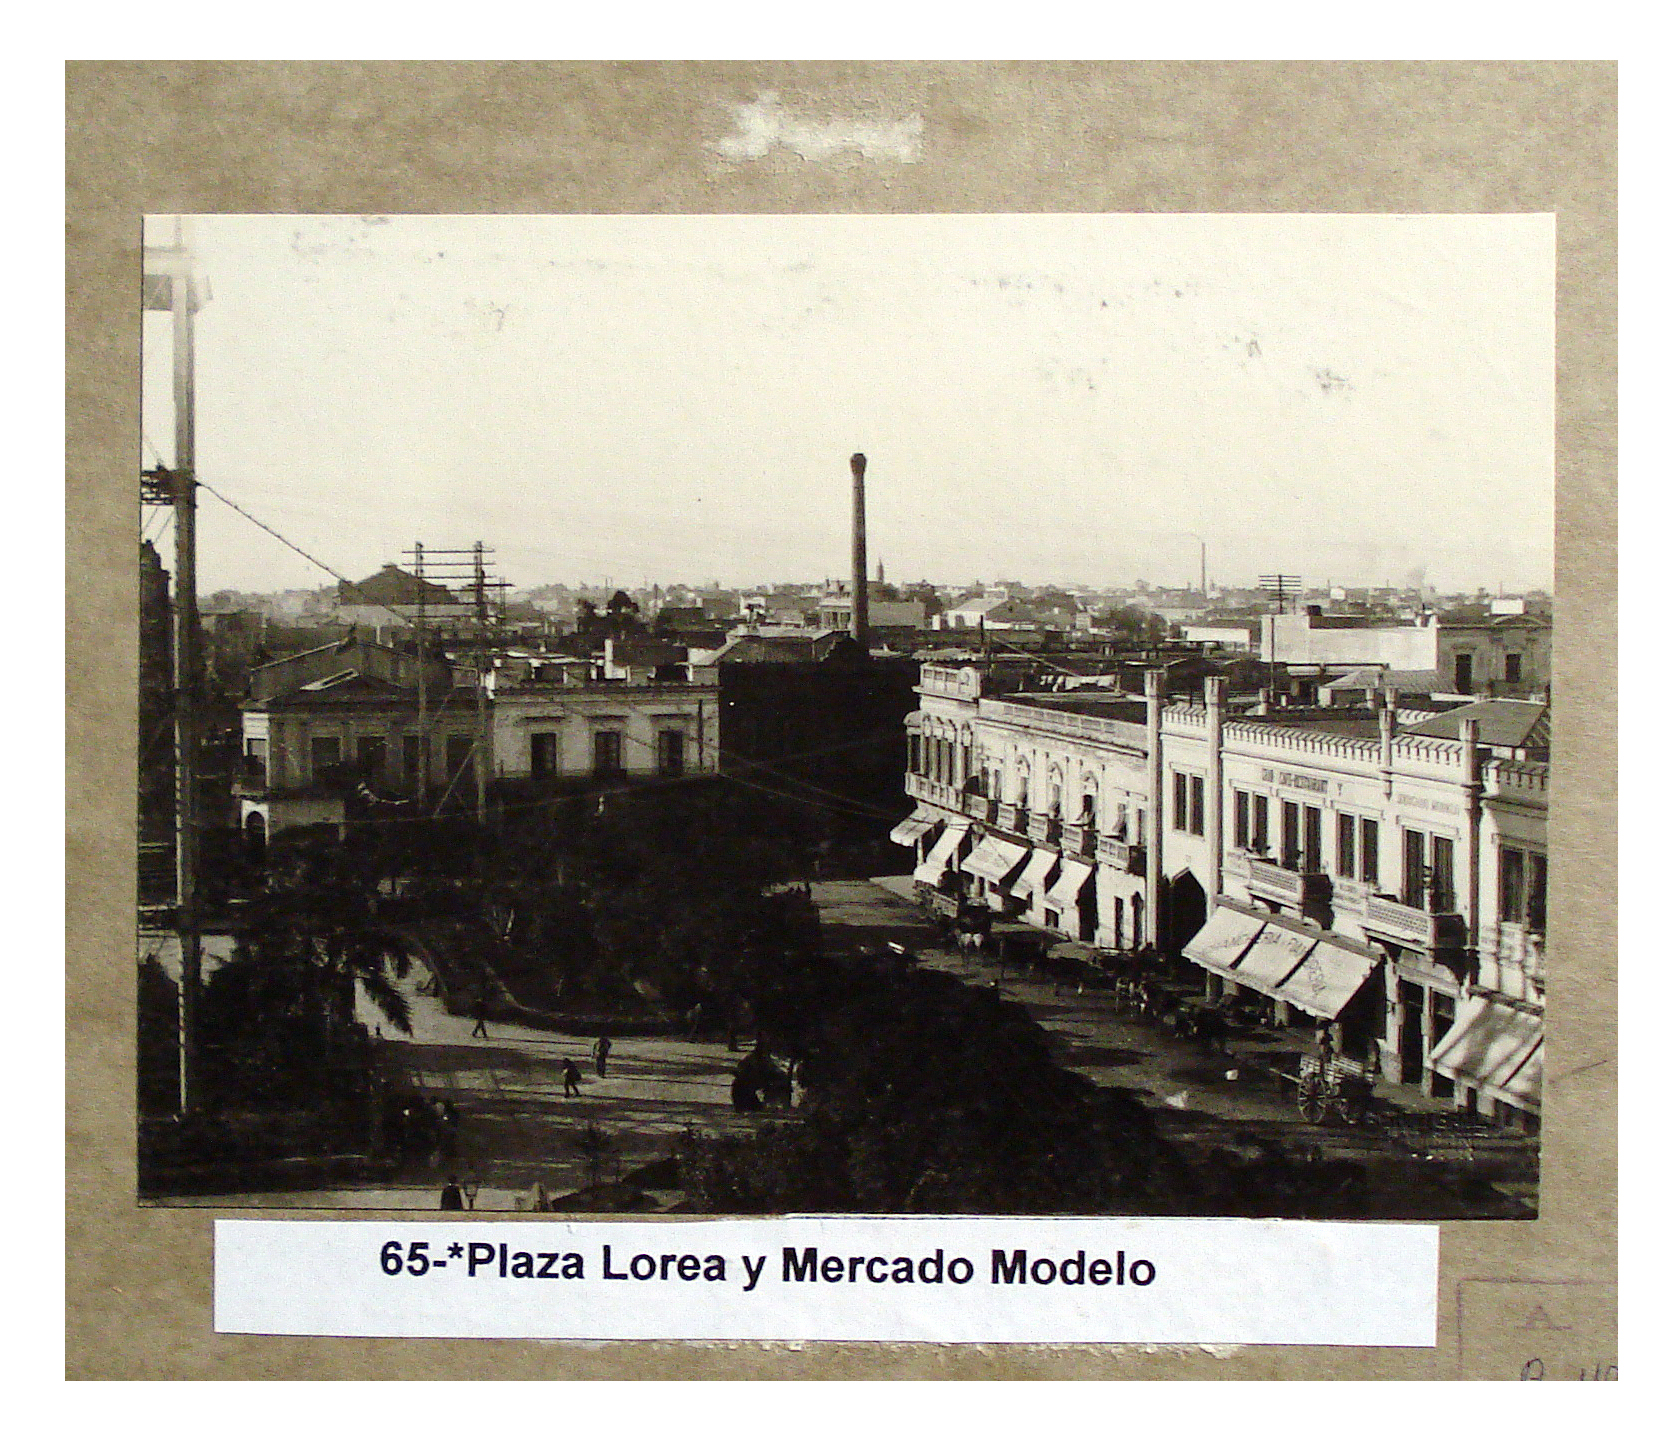 Plaza Lorea y Mercado Modelo